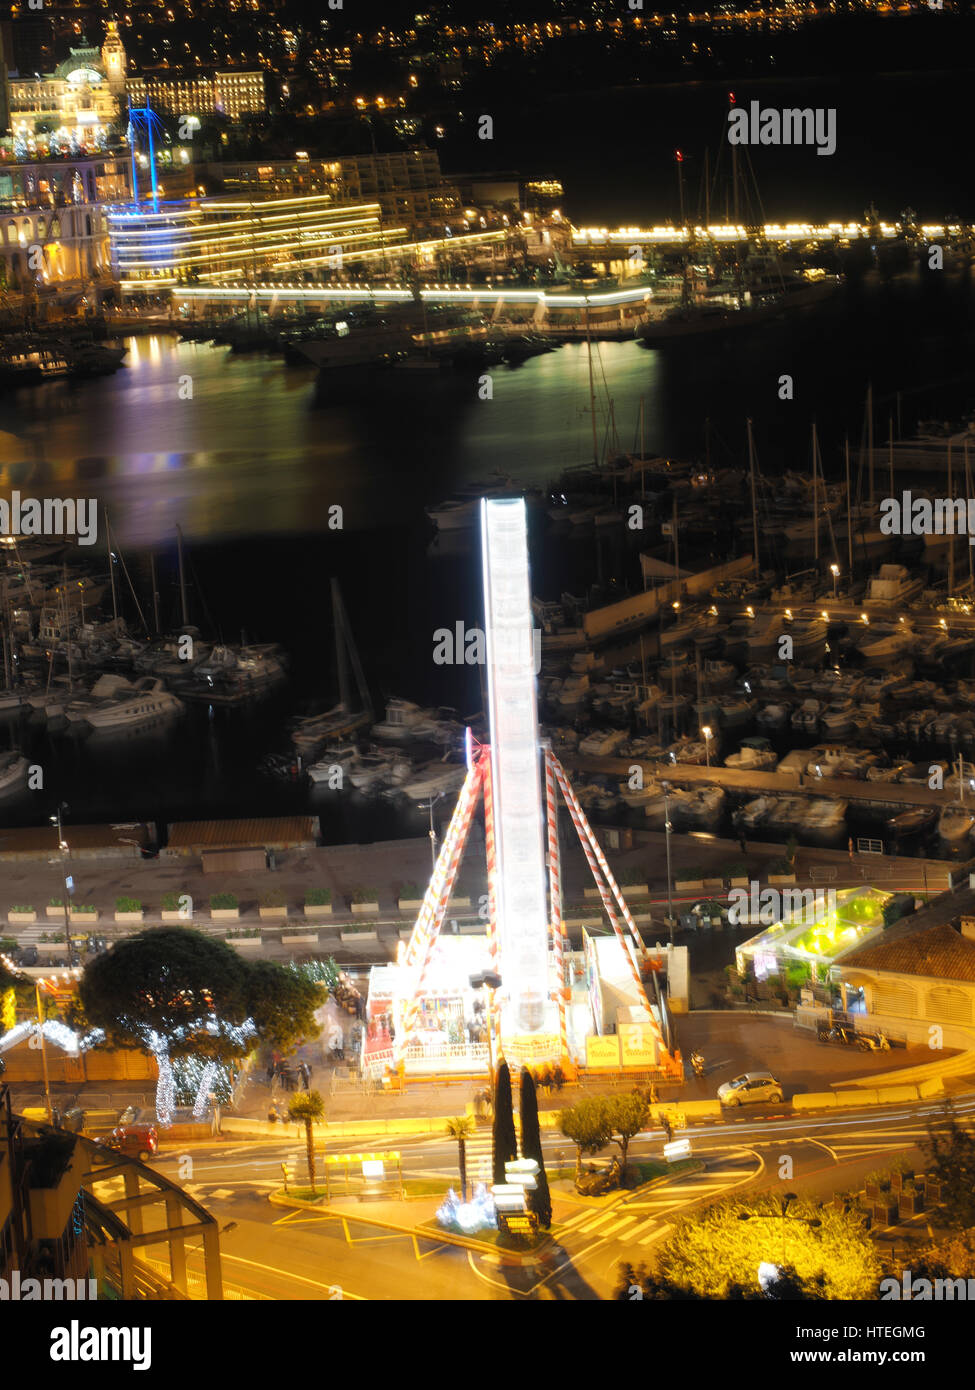 Ferris wheel and ice rink at Port Hercule, behind Hôtel Hermitage Monte-Carlo, Monaco, Mediterranean Stock Photo